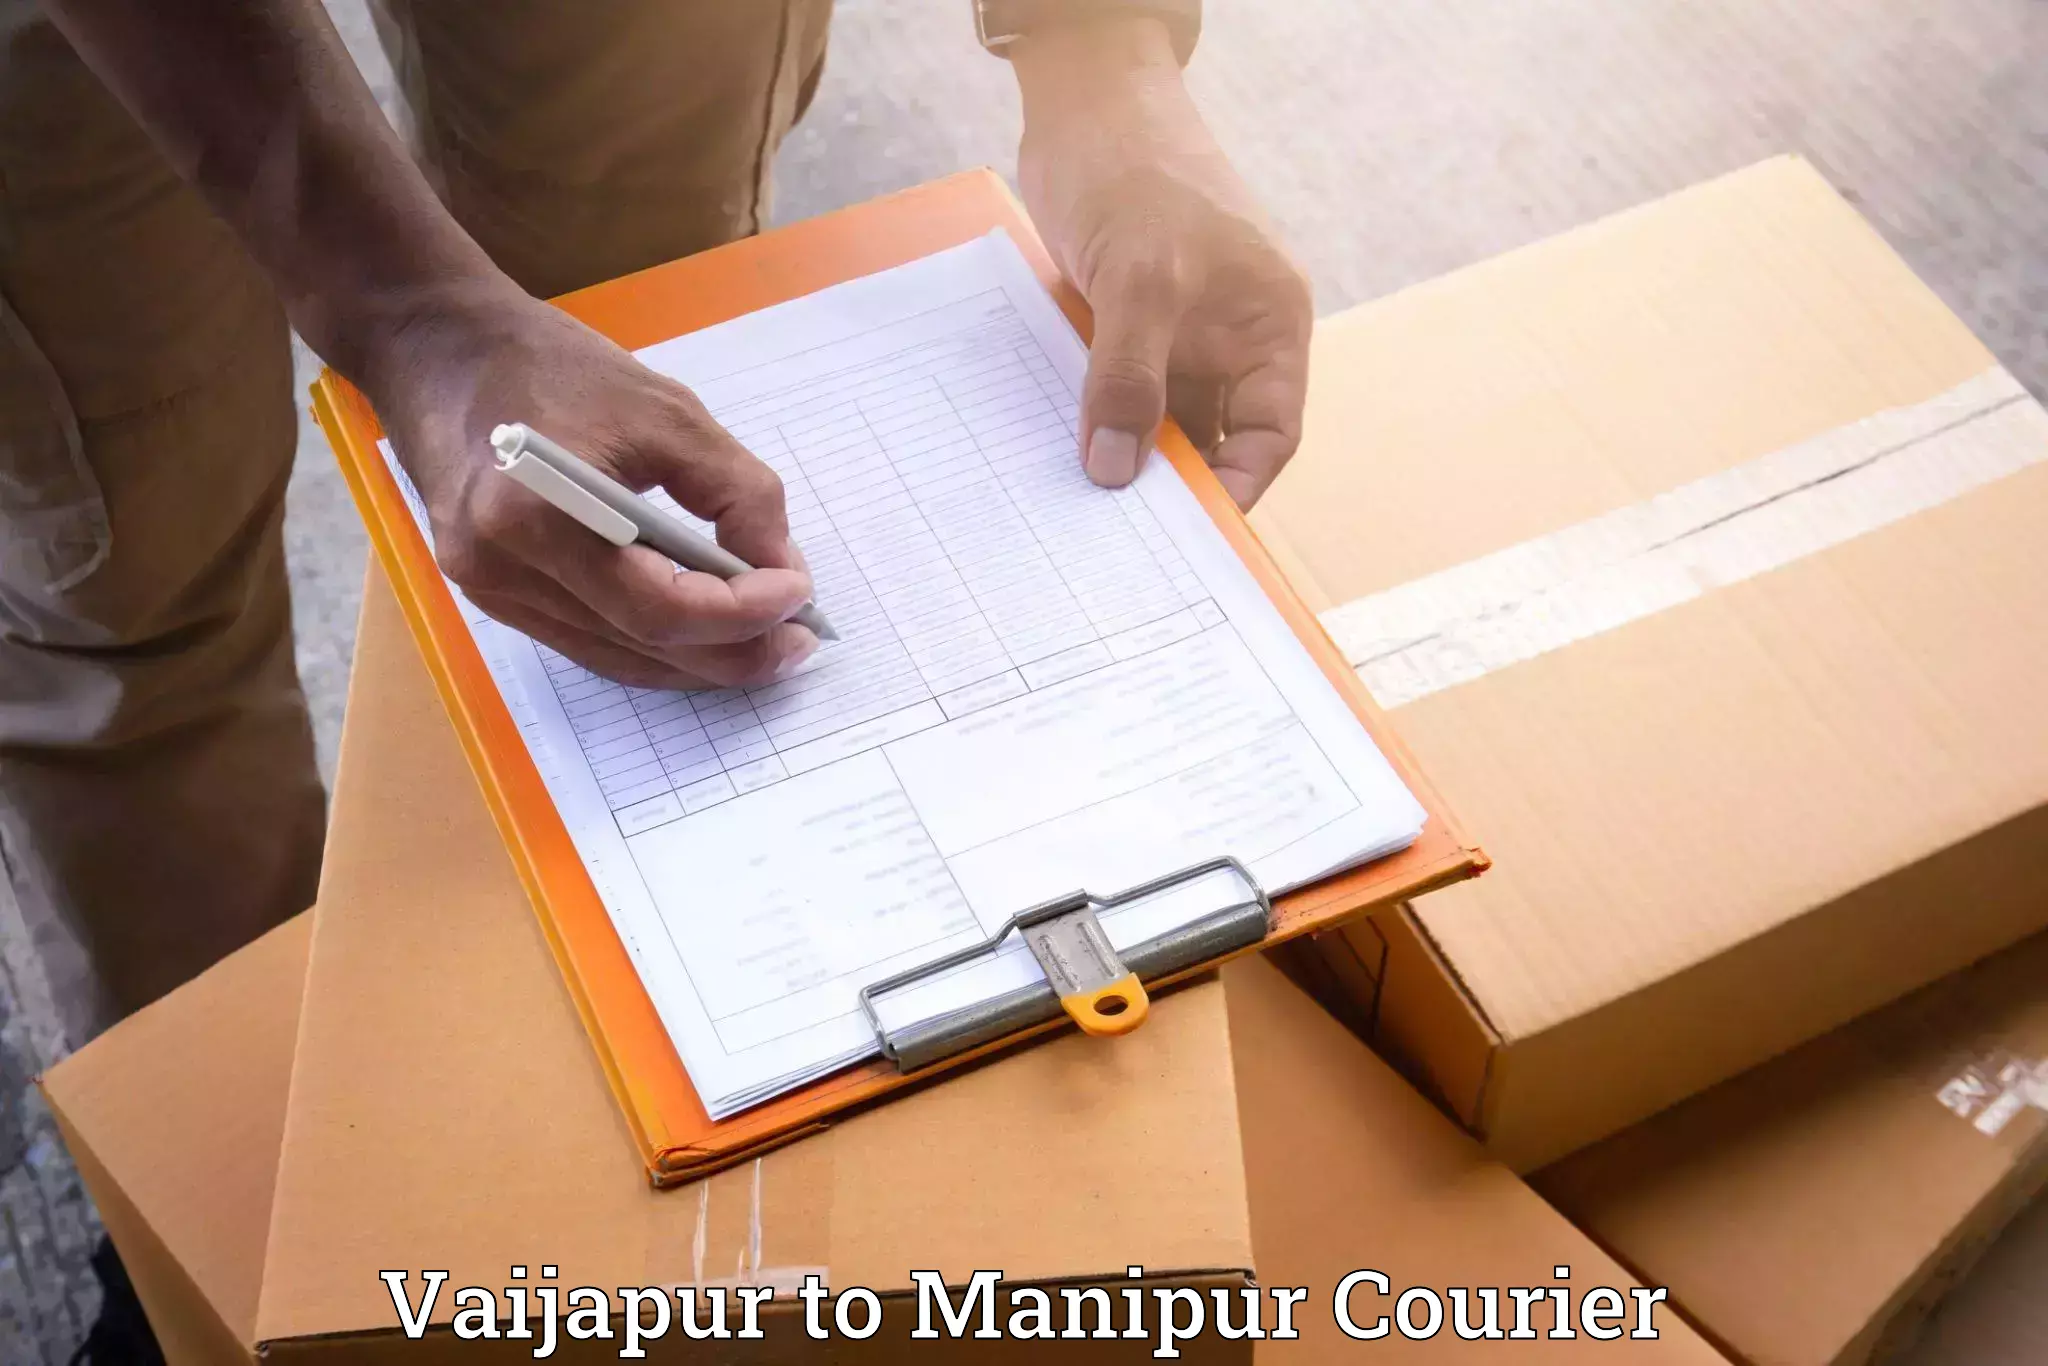 Furniture moving service Vaijapur to Manipur